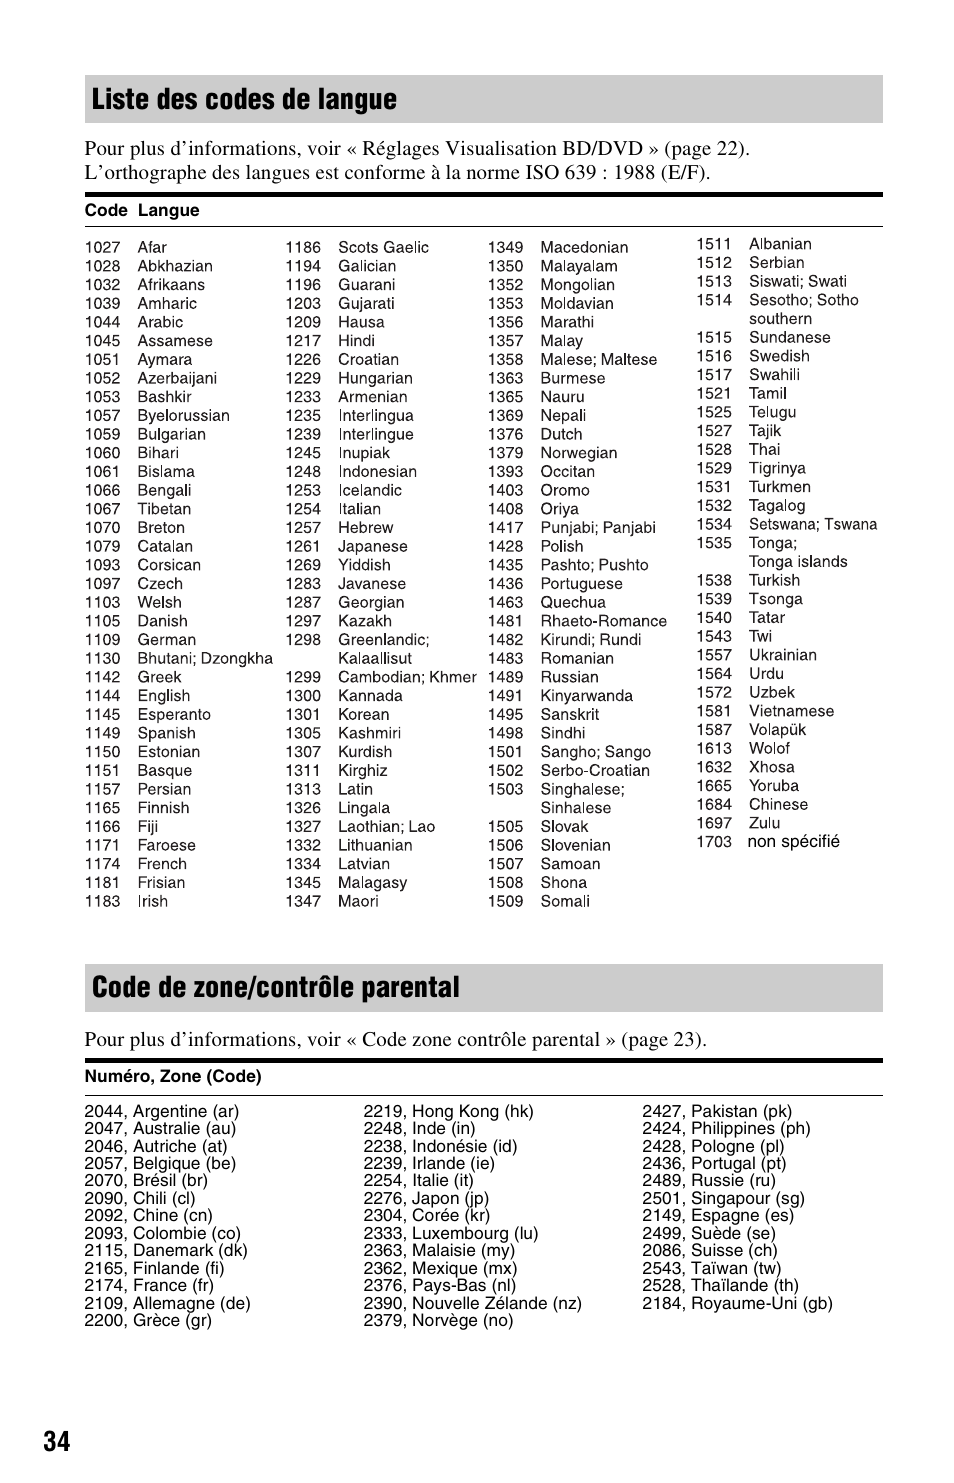 Liste des codes de langue, Code de zone/contrôle parental | Sony BDP-S370 Manuel d'utilisation | Page 34 / 35